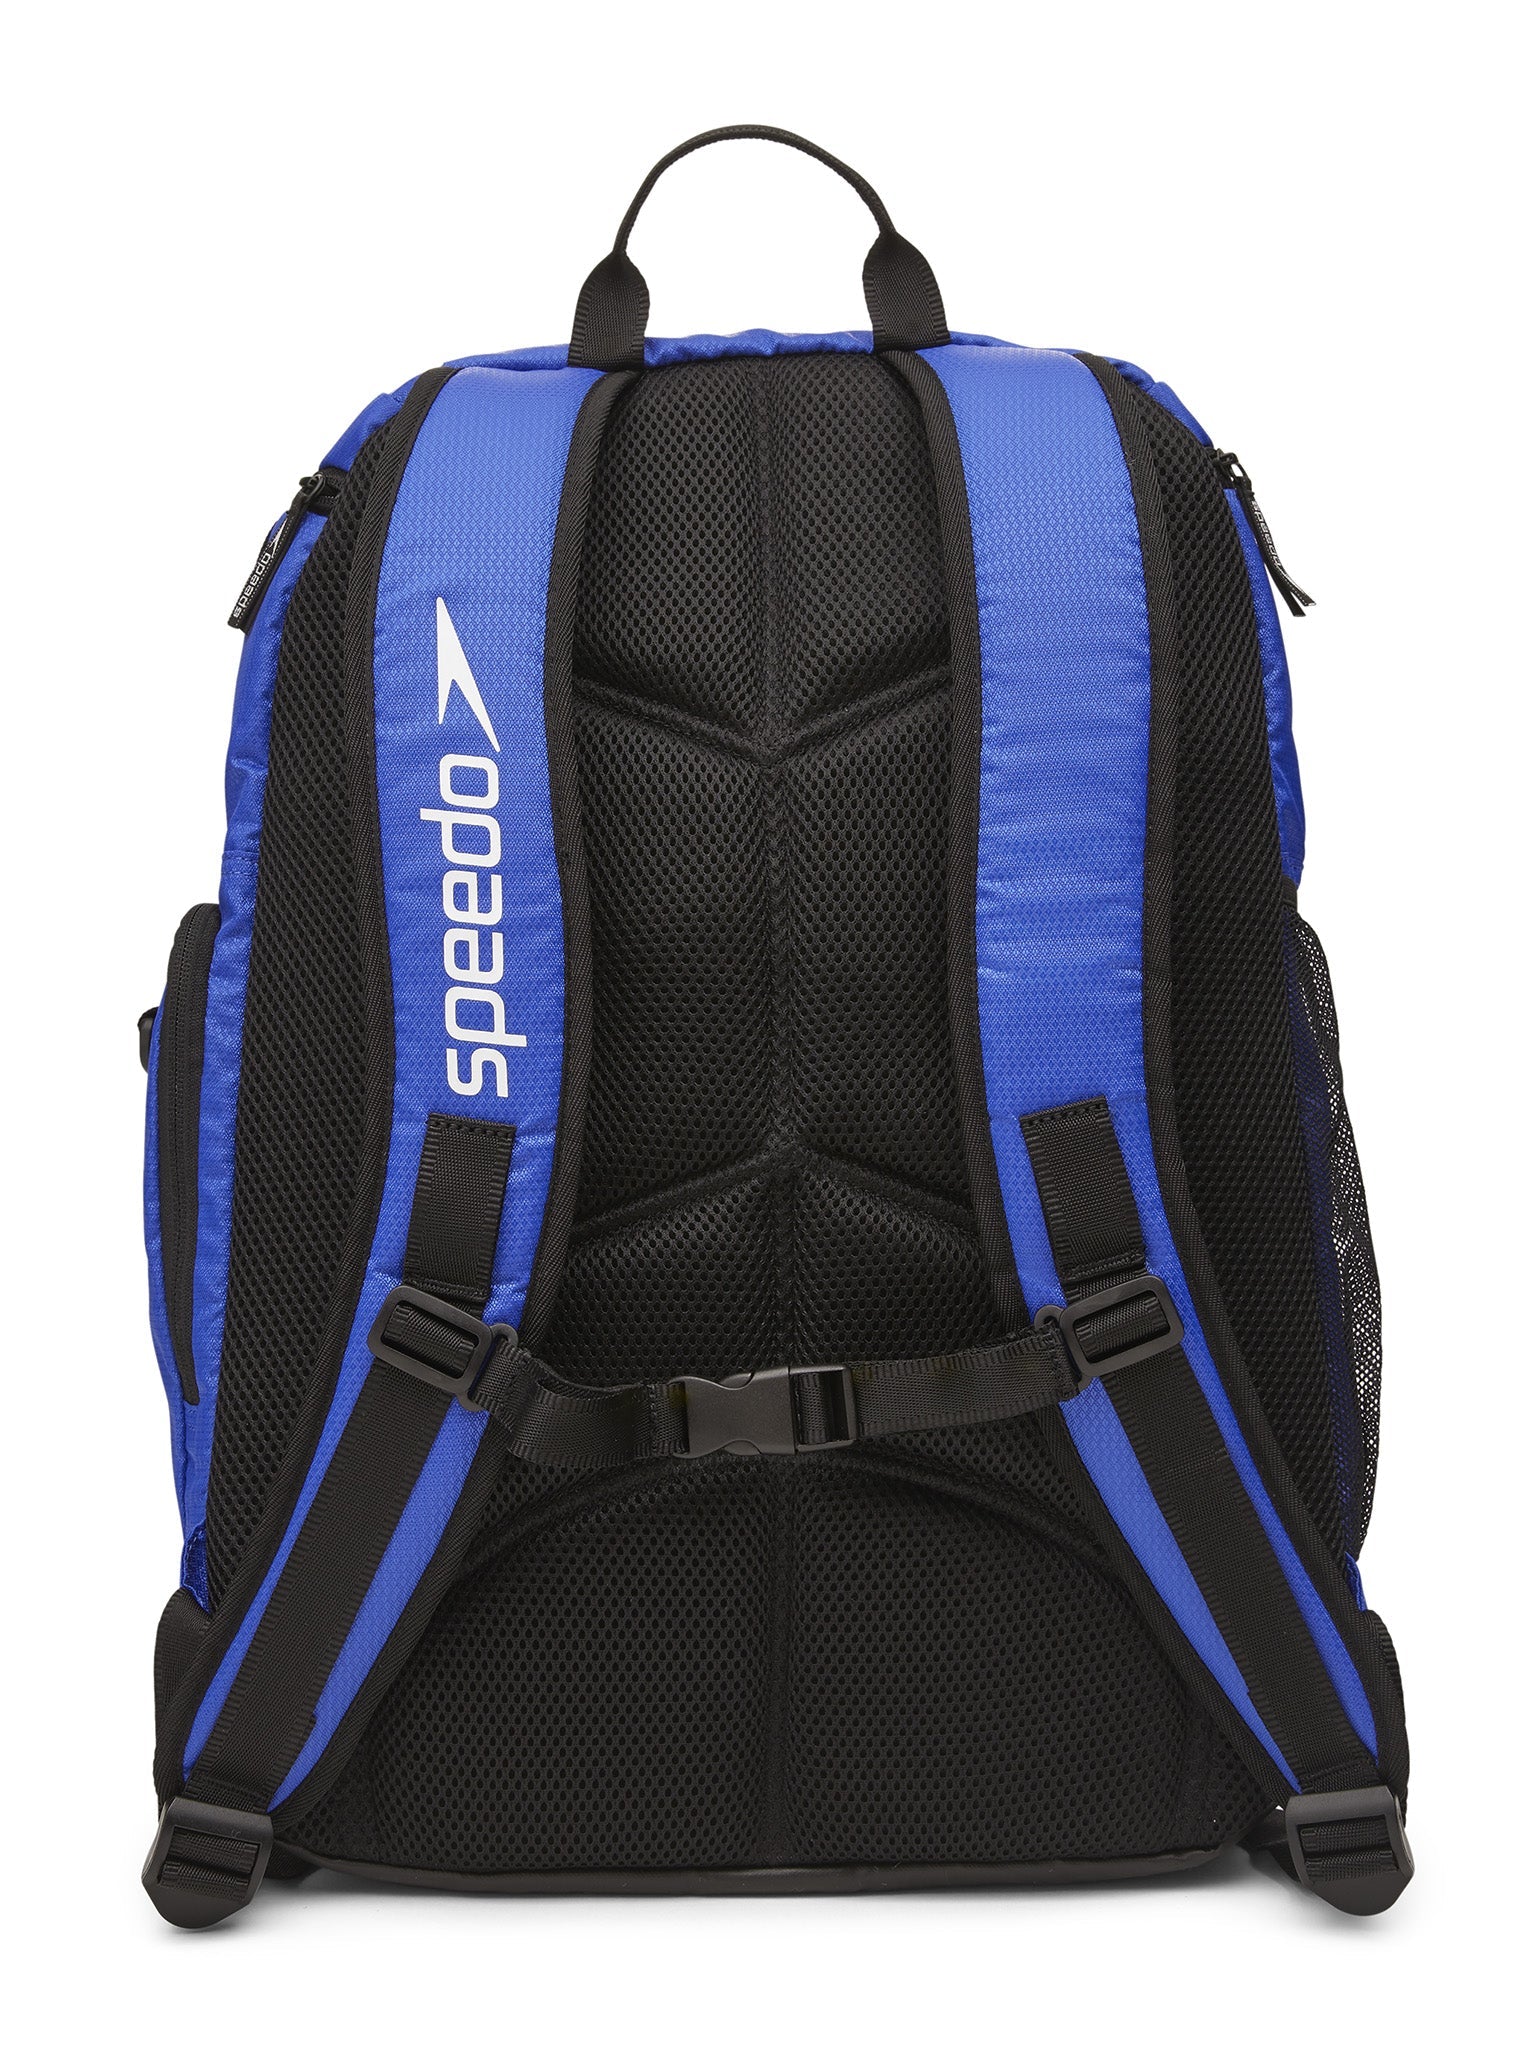 Teamster 2.0 Backpack - Blue